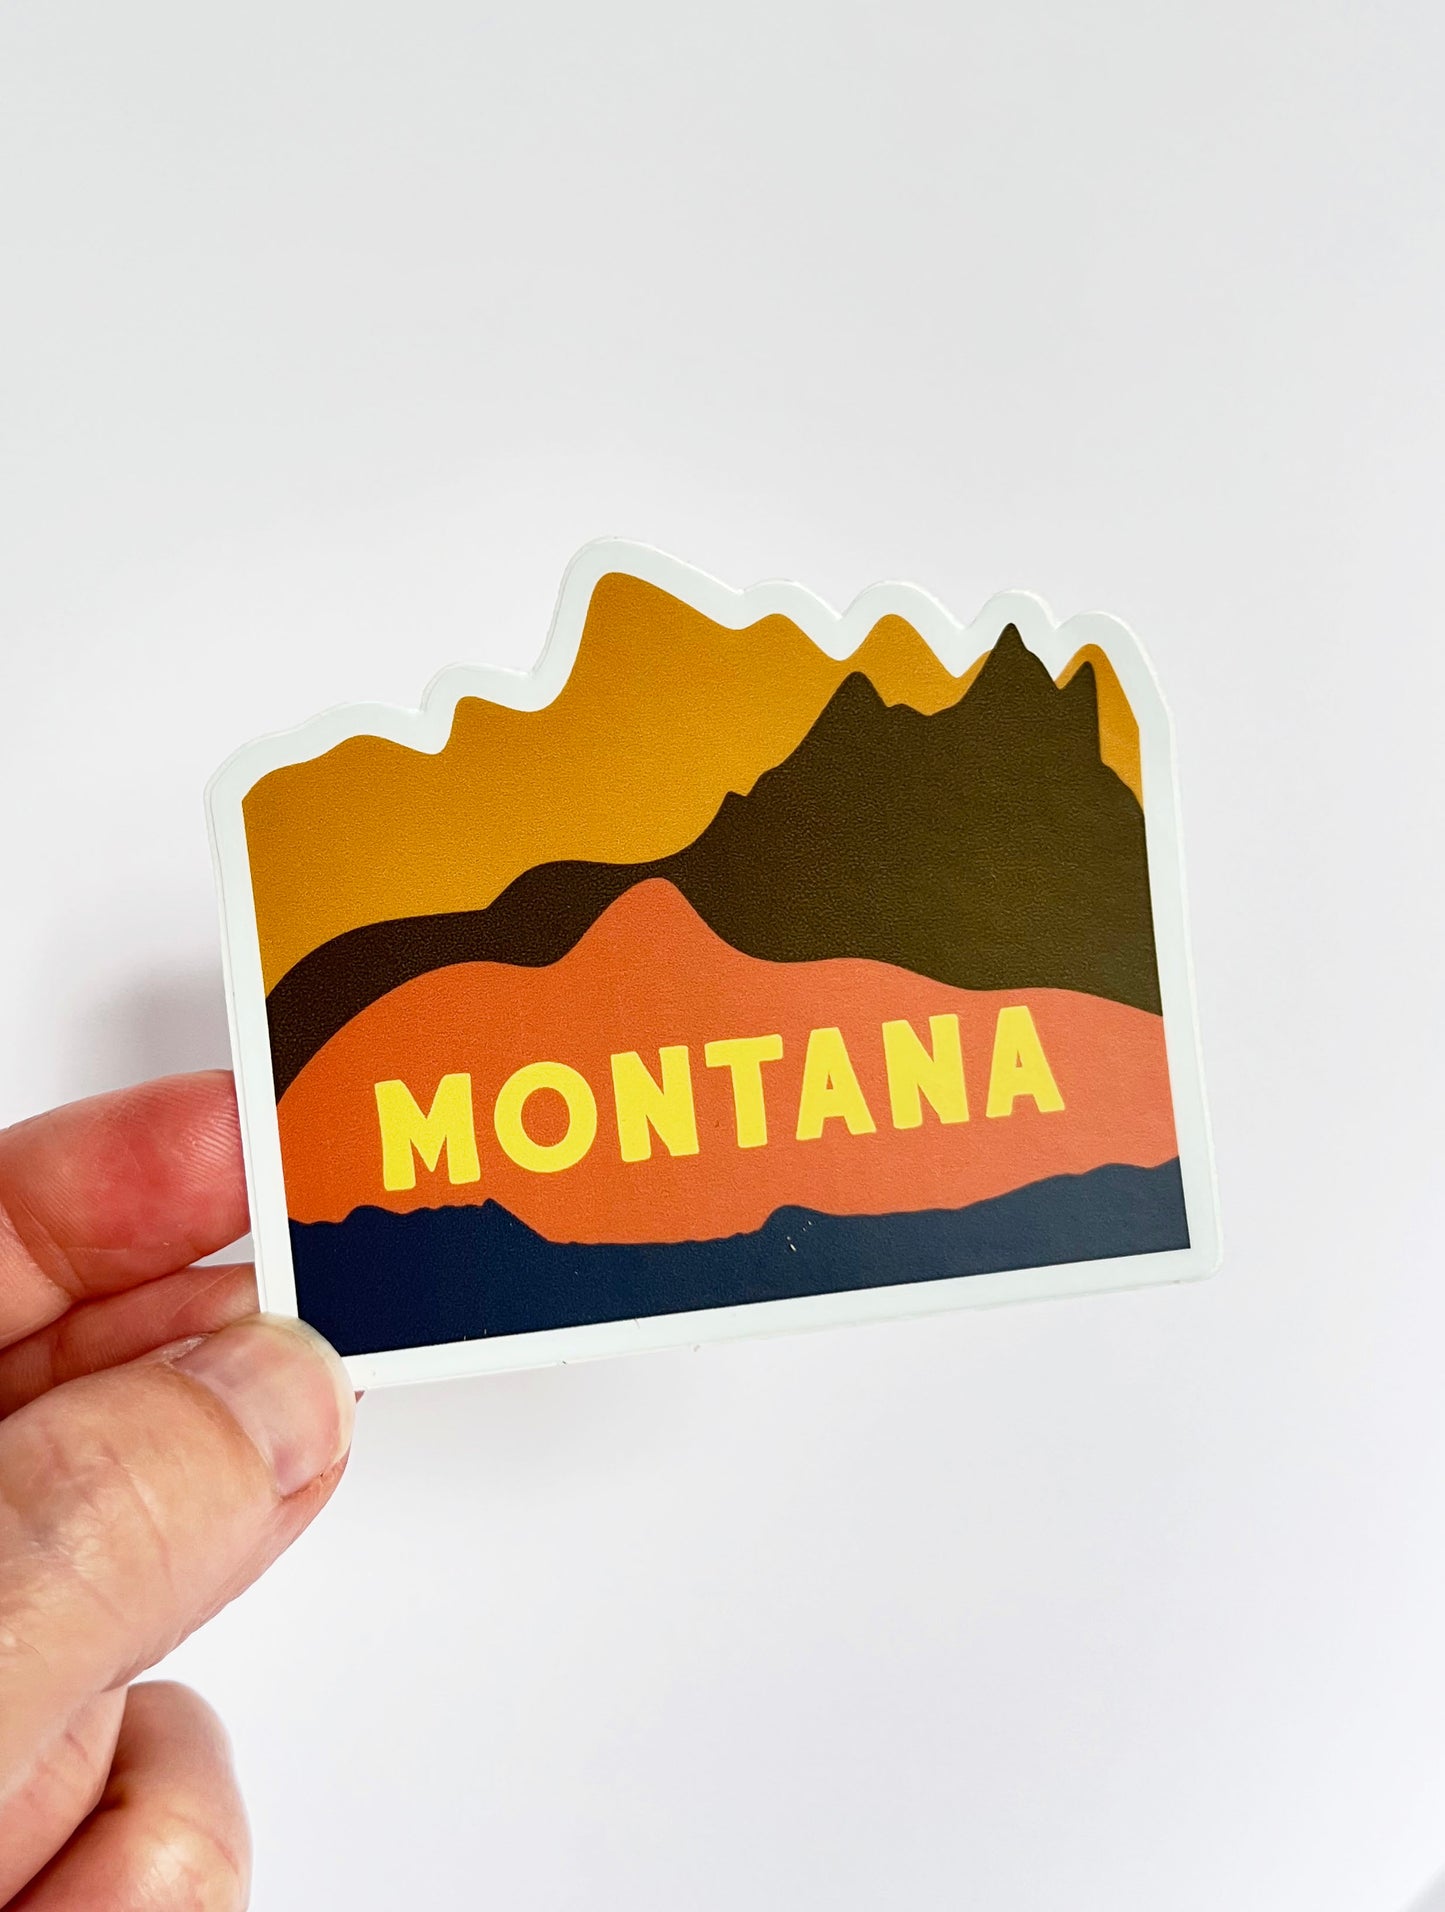 Montana Mountains Sticker